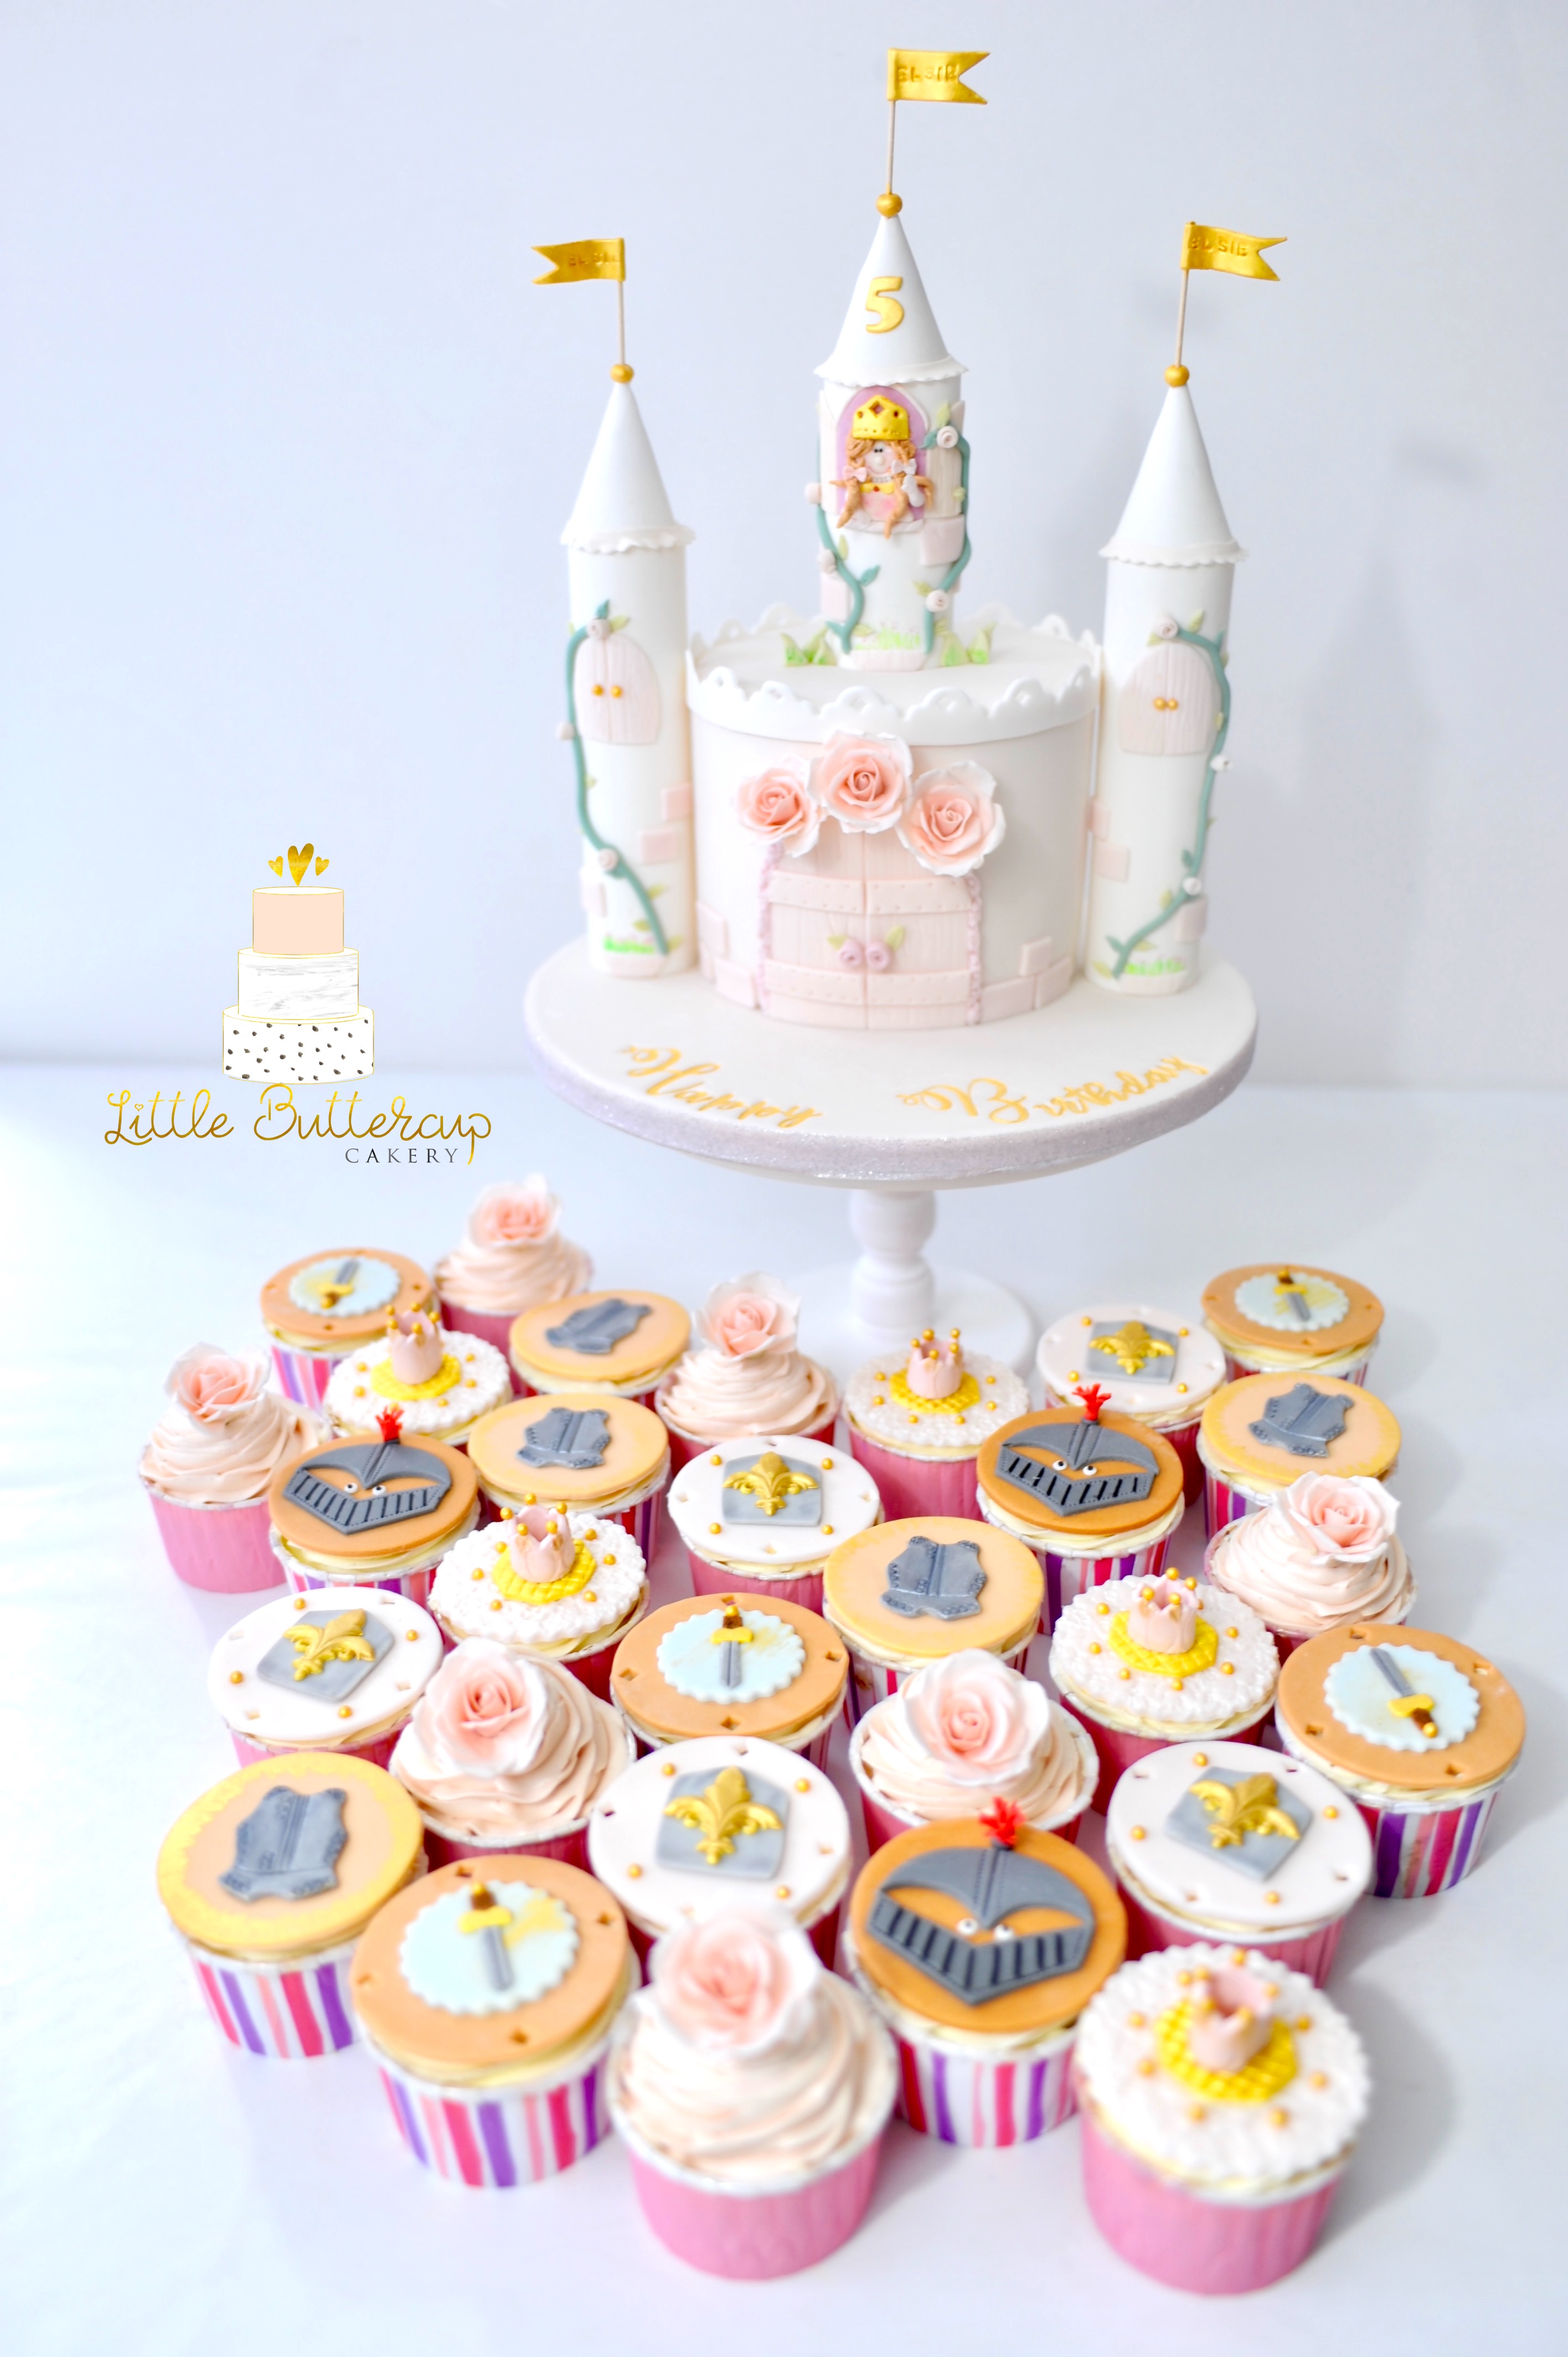 Princess and knight cupcakes